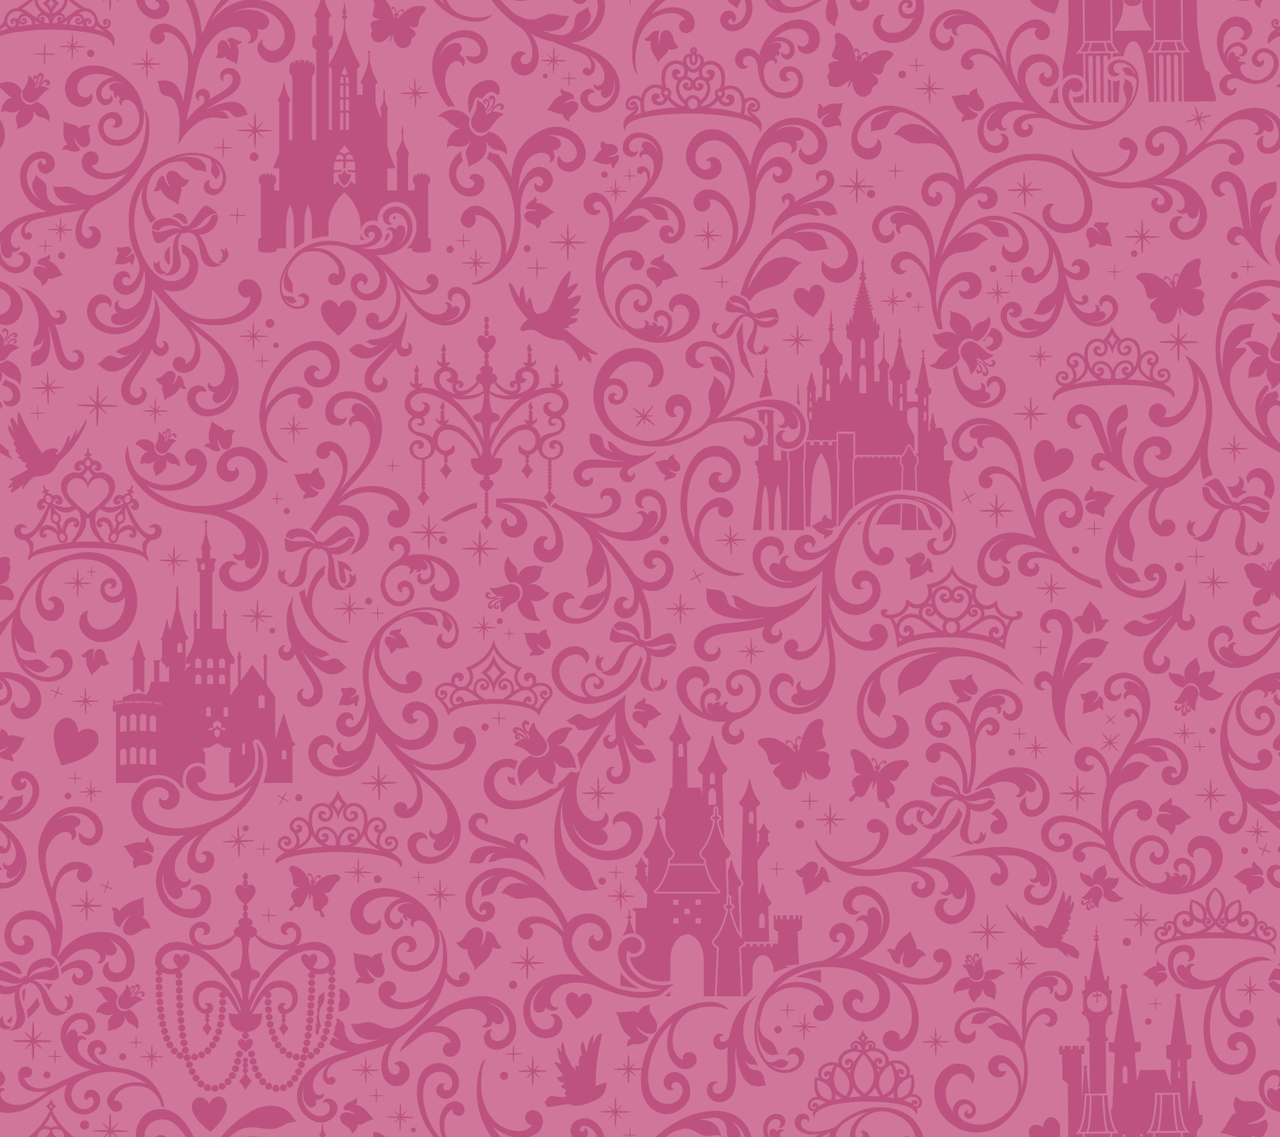 Tường lâu đài màu hồng - Pink Castle Wallpapers Dành cho những ai yêu thích sự nữ tính và mộng mơ, tường lâu đài màu hồng chắc chắn sẽ làm bạn cảm thấy hài lòng. Với gam màu tươi sáng, tường màu hồng làm nổi bật lâu đài, tạo nên không gian thần tiên và đầy phấn khích. Hãy đến và chiêm ngưỡng những bức ảnh tuyệt đẹp này, bạn sẽ không bao giờ muốn rời đi.